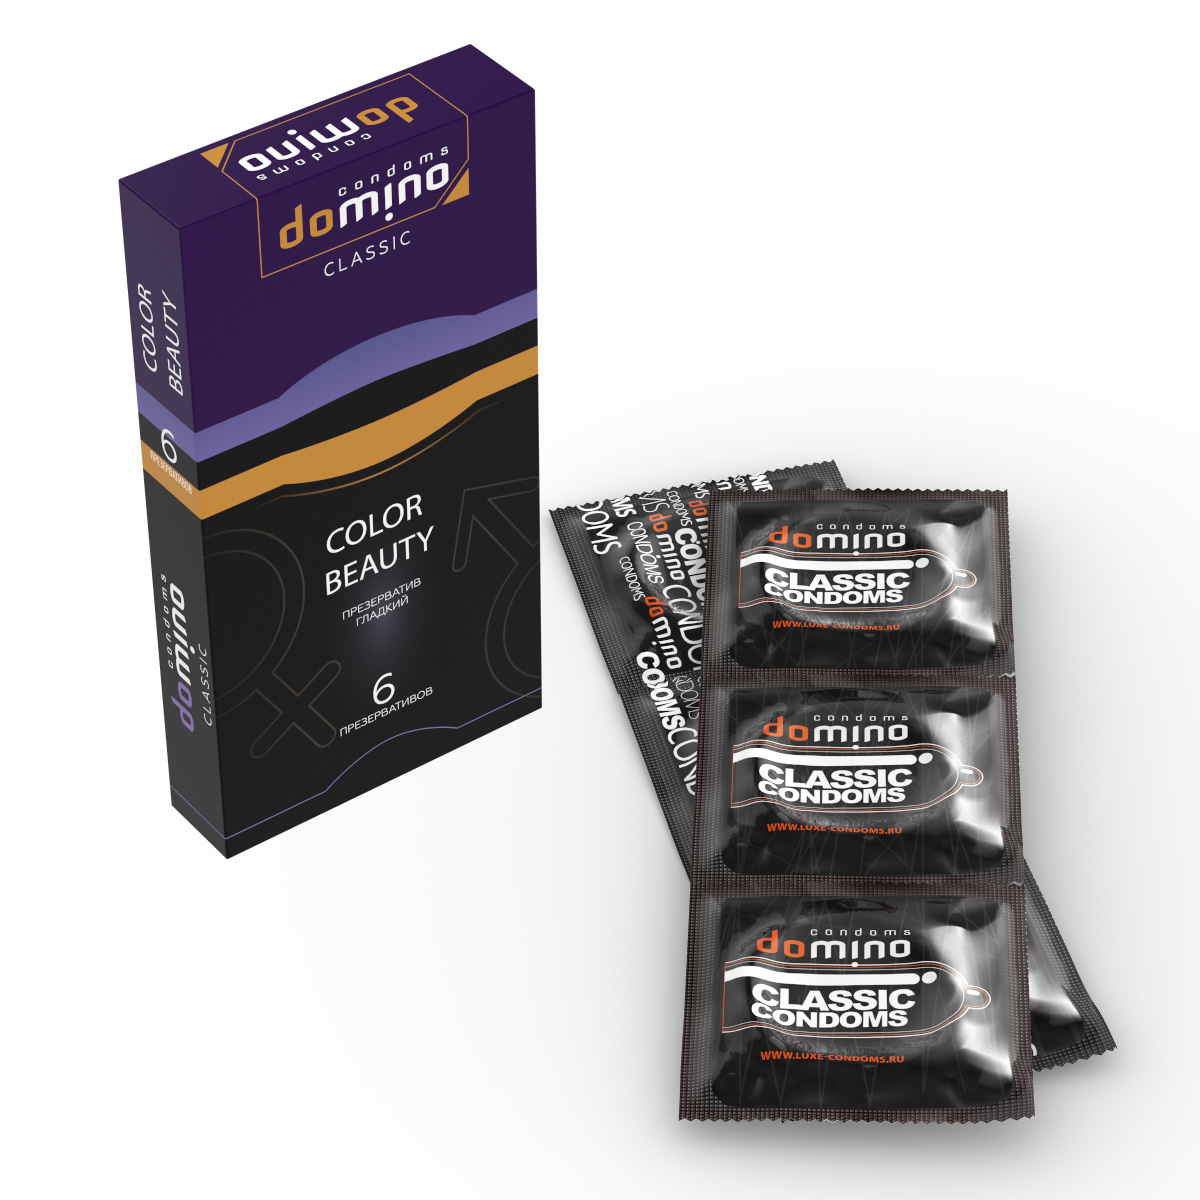 Купить Разноцветные презервативы DOMINO Classic Colour Beauty - 6 шт. Domino, золотистый; фиолетовый; черный, латекс